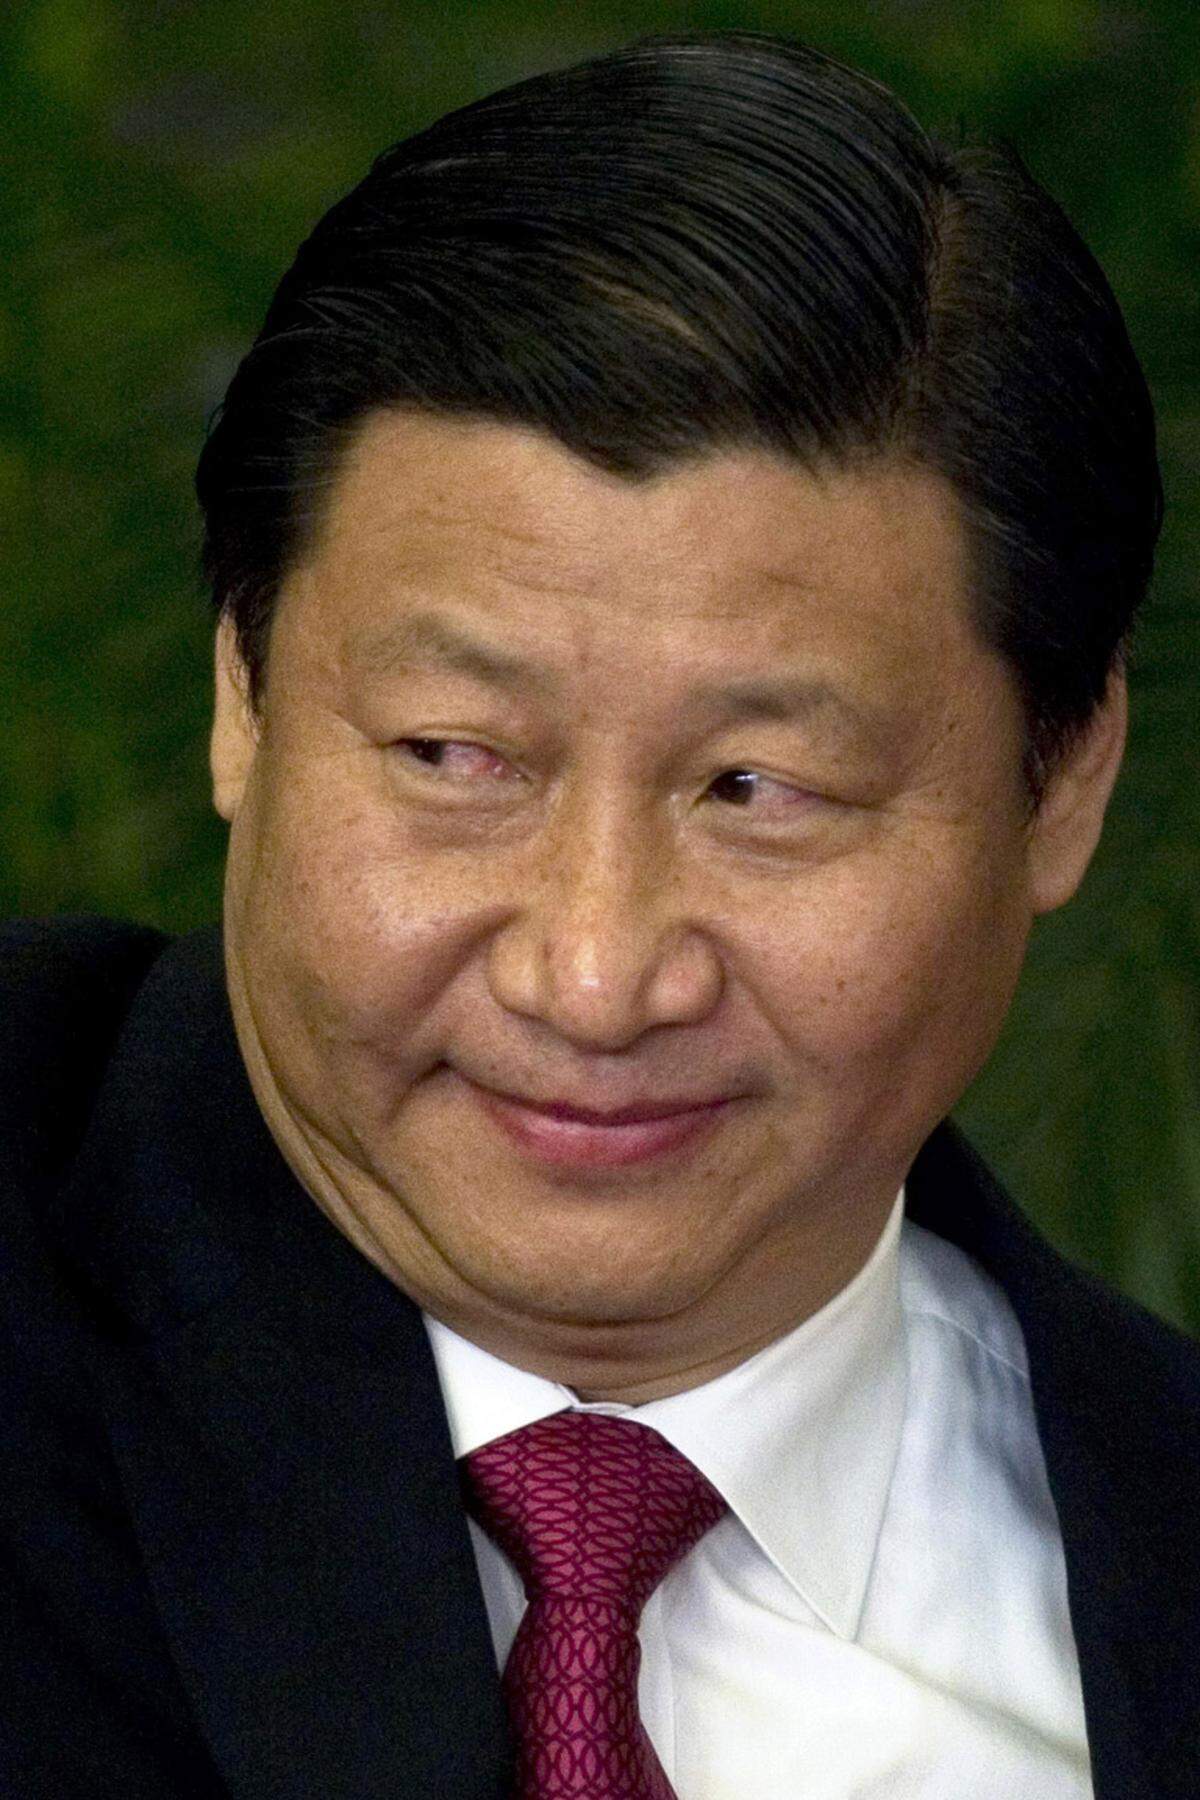 Xi Jinping: Chinas roter Prinz liebt den freien Markt Die westliche Welt rätselt, wie der zurückhaltende KP-Funktionär tickt. Schließlich wird er mit allerhöchster Wahrscheinlichkeit bald neuer Staatschef Chinas - und somit einer der mächtigsten Männer der Welt. Demokratische Reformen sollte man von ihm nicht erwarten (mehr).